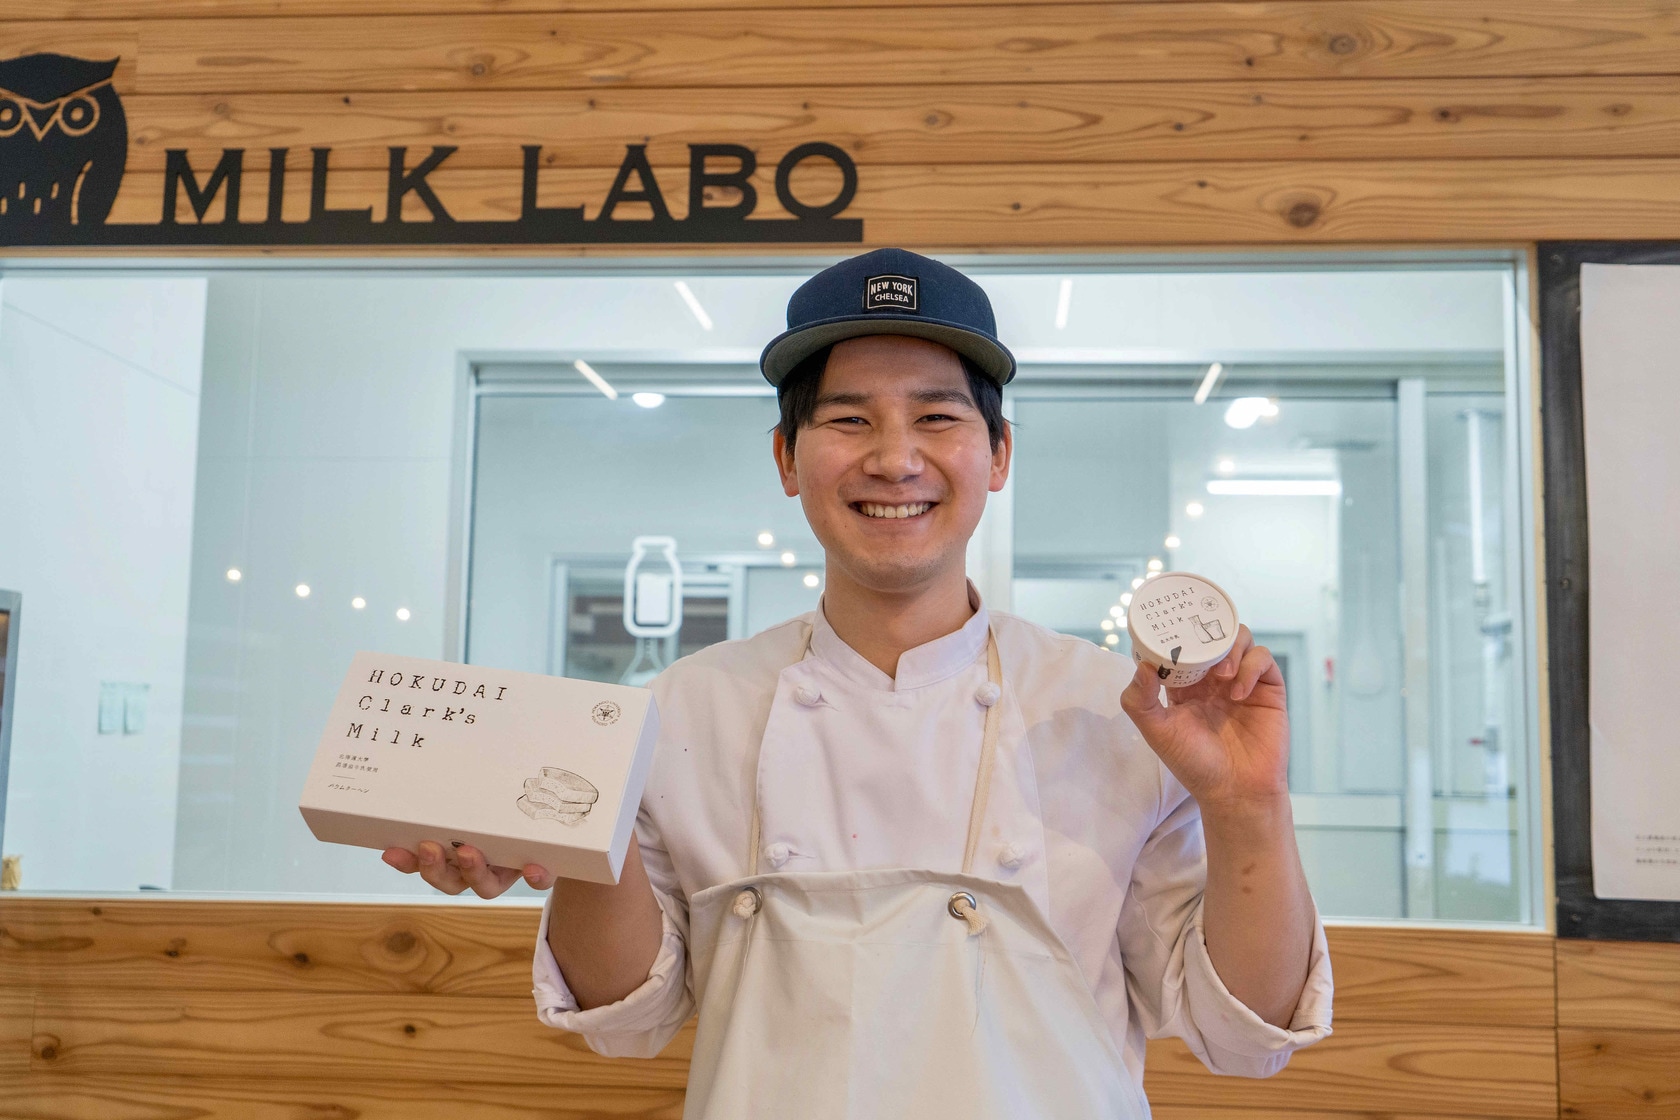 北大マルシェ Cafe Labo 札幌市 Hokudai Clark S Milk クッキーセット すべての商品 197 北海道 つながるマーケット